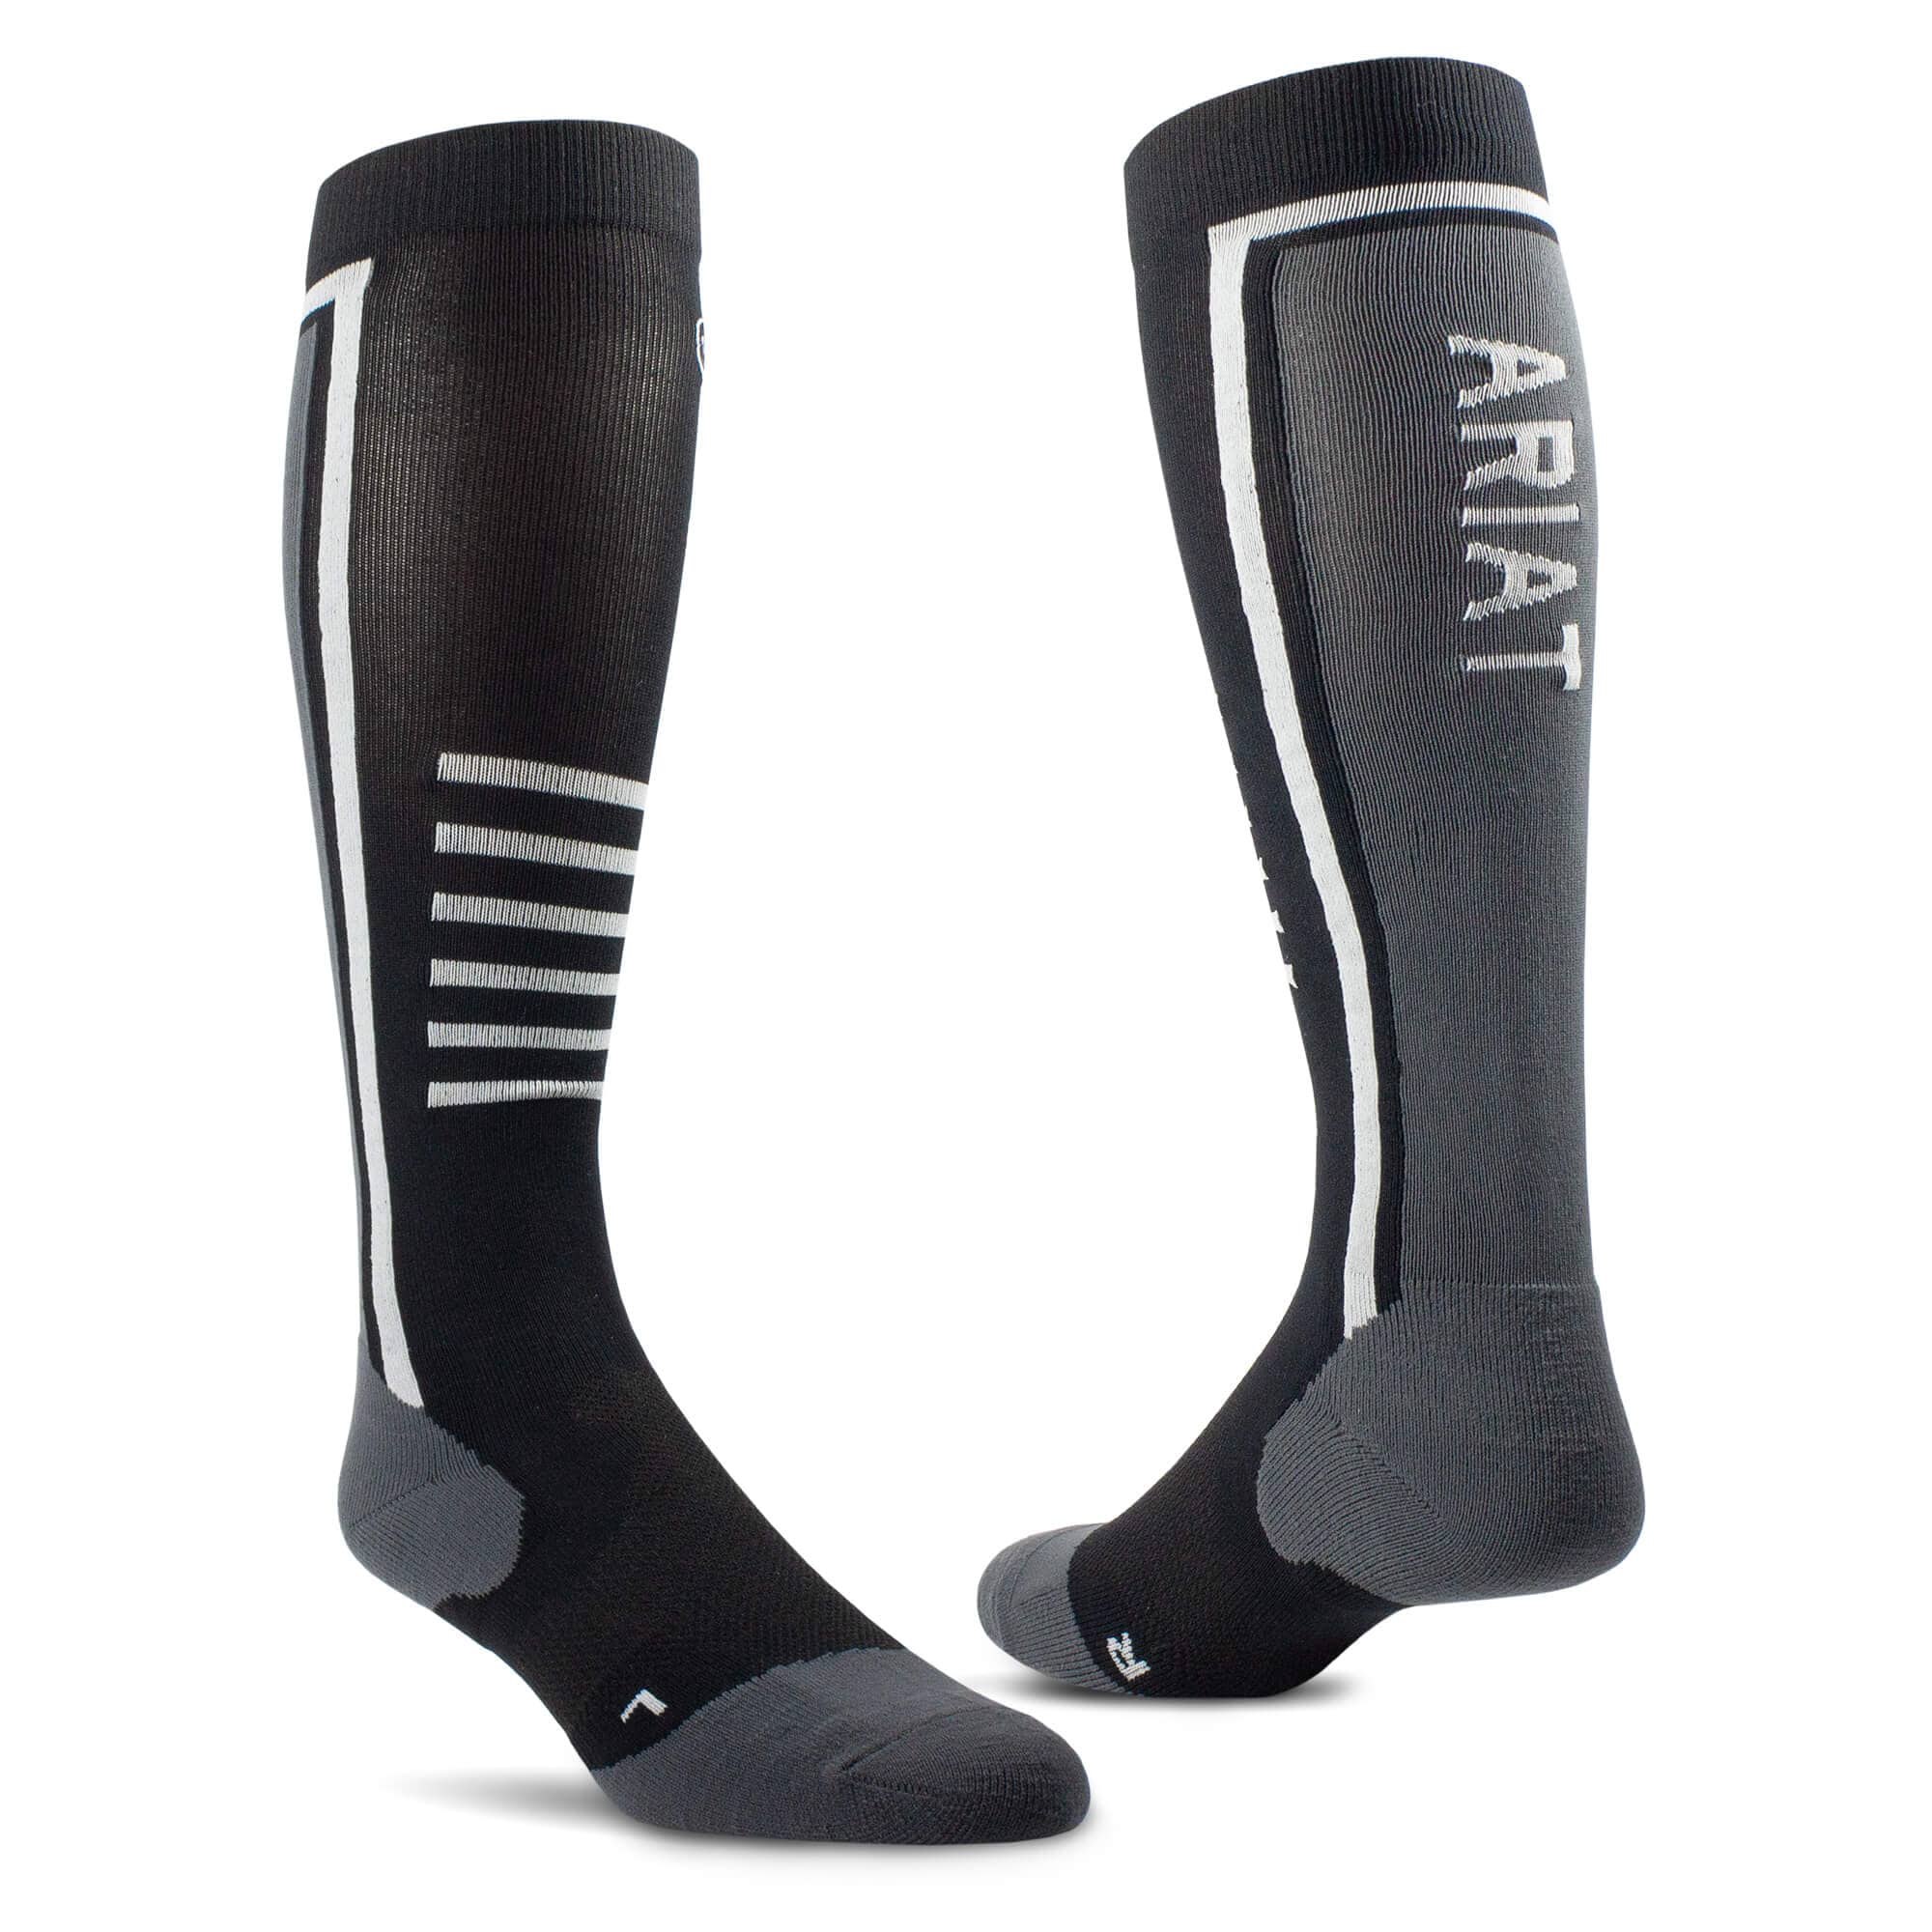 Ariattek Slimline Socks - Black/Sleet